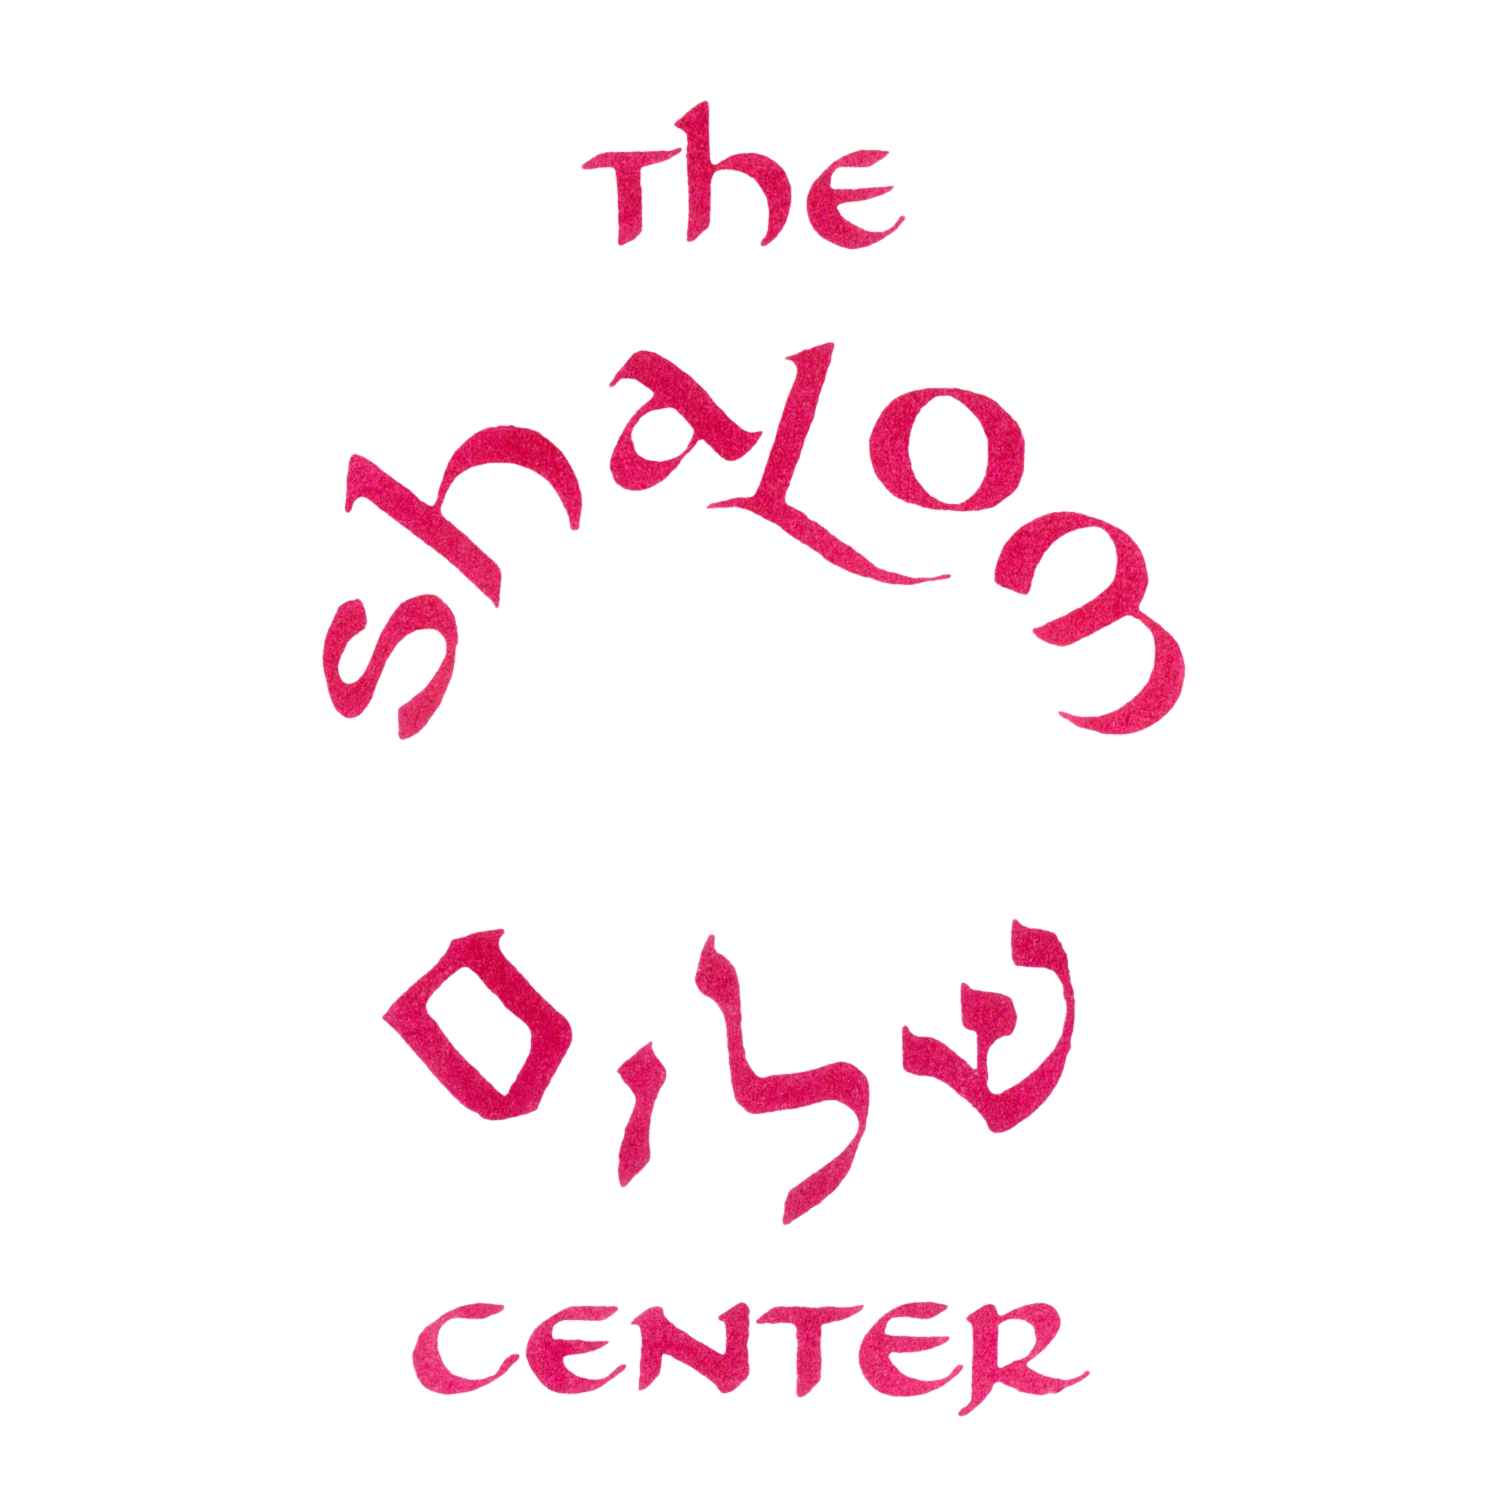 The Shalom Center